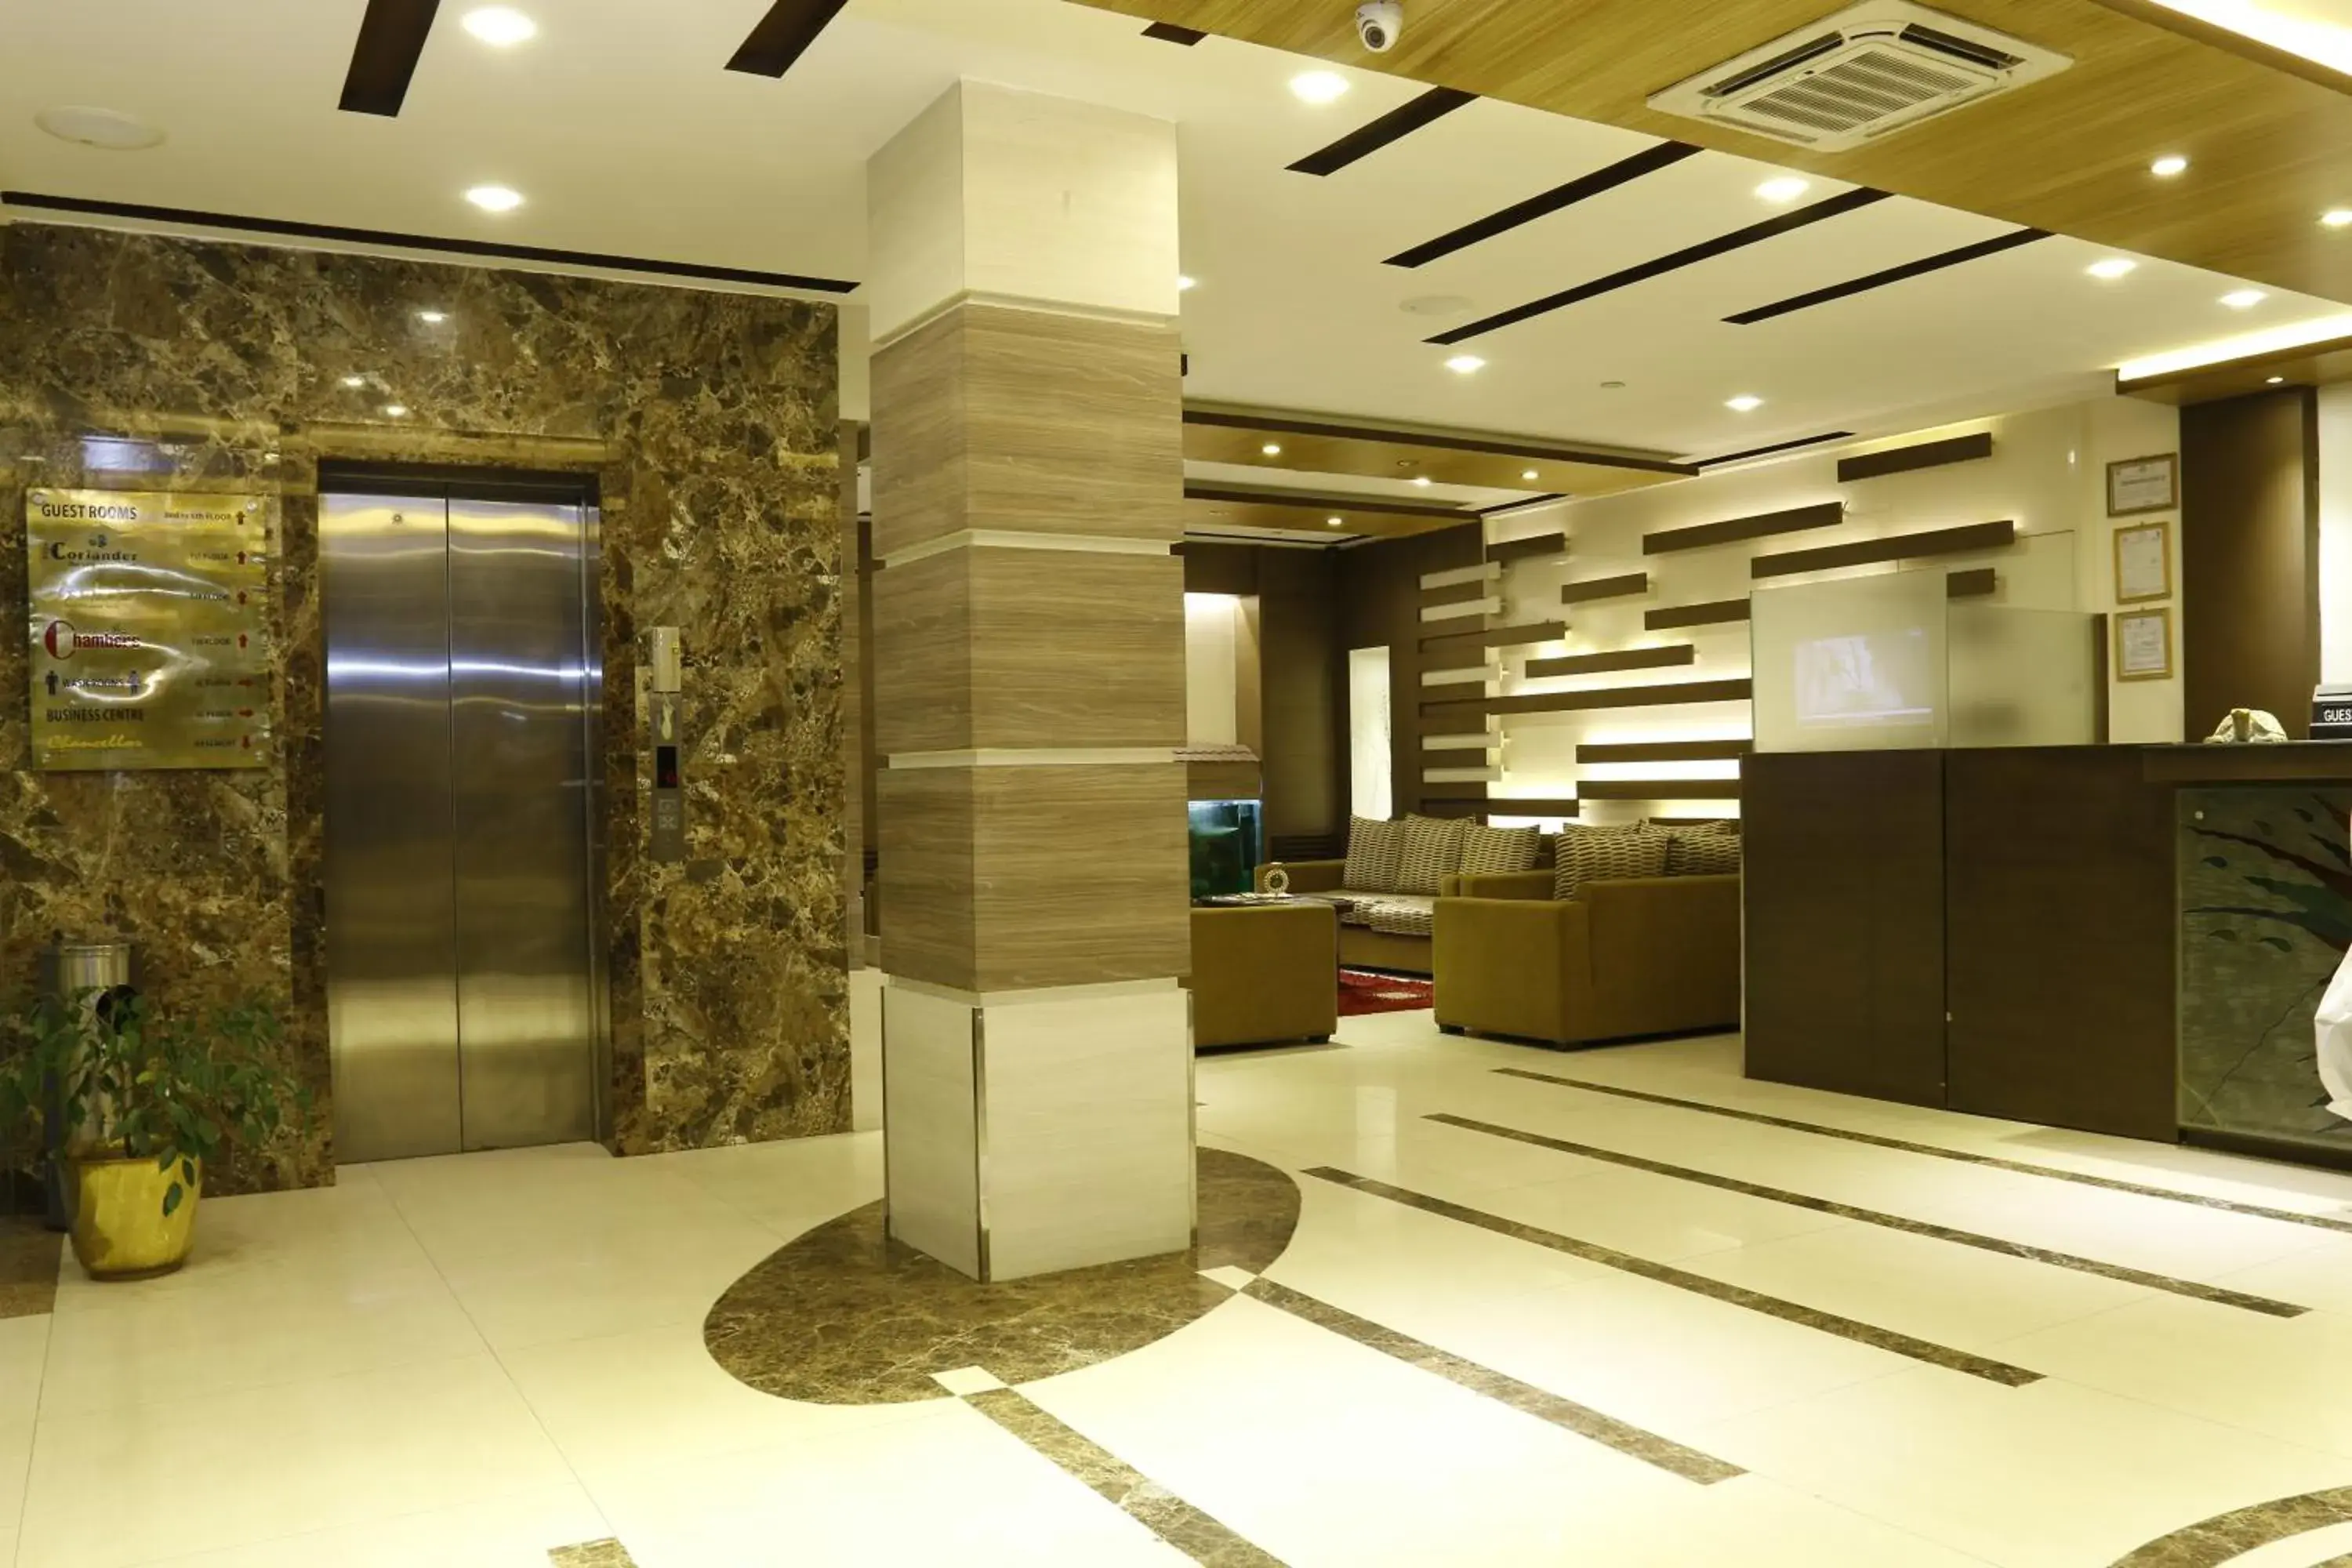 Lobby or reception, Lobby/Reception in Hotel Mirage Kathmandu